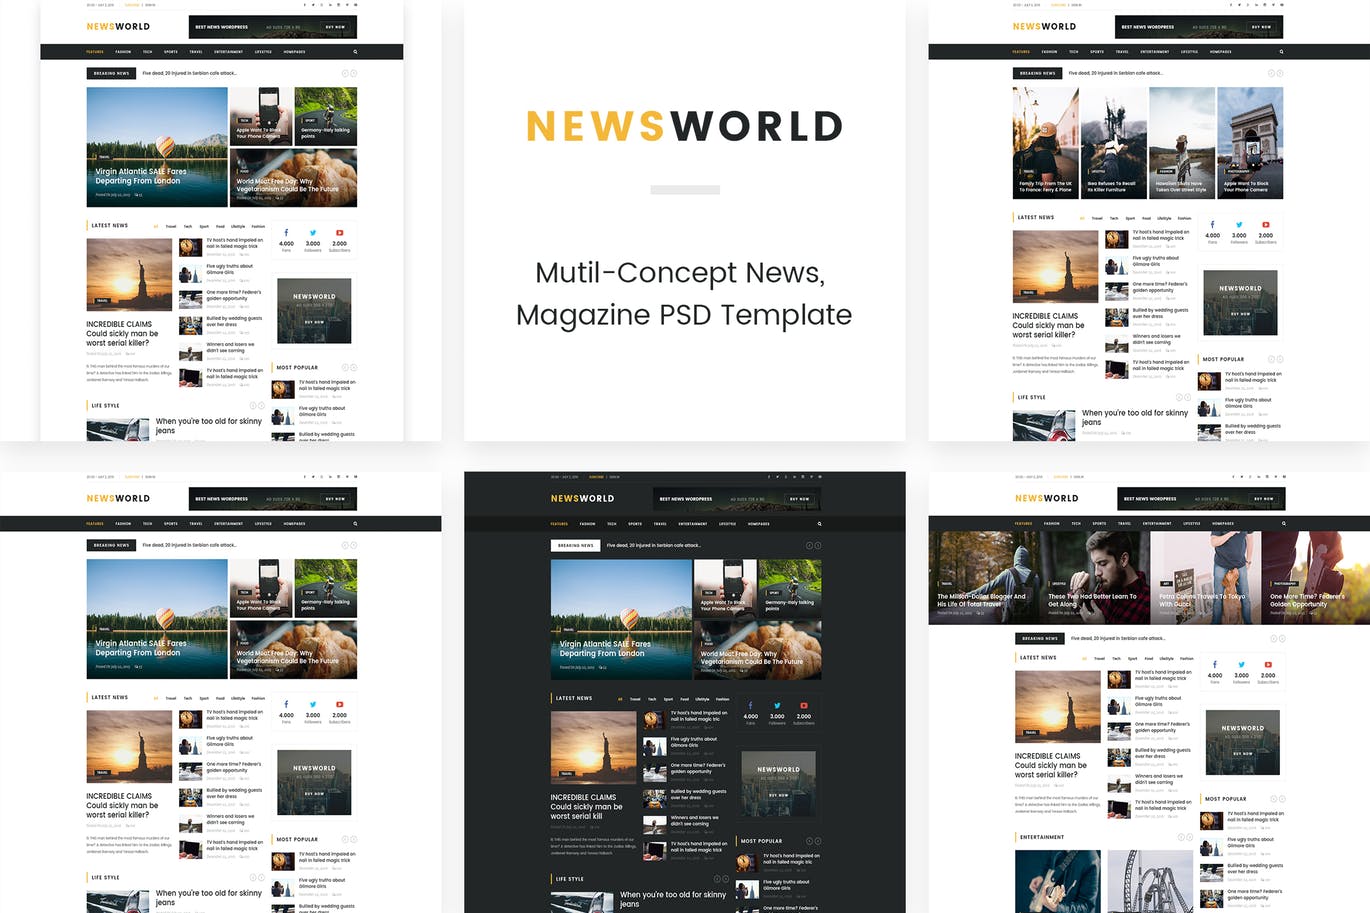 新闻资讯杂志类网站设计HTML模板蚂蚁素材精选 Newsworld | Mutil-Concept Magazine HTML5 Template插图